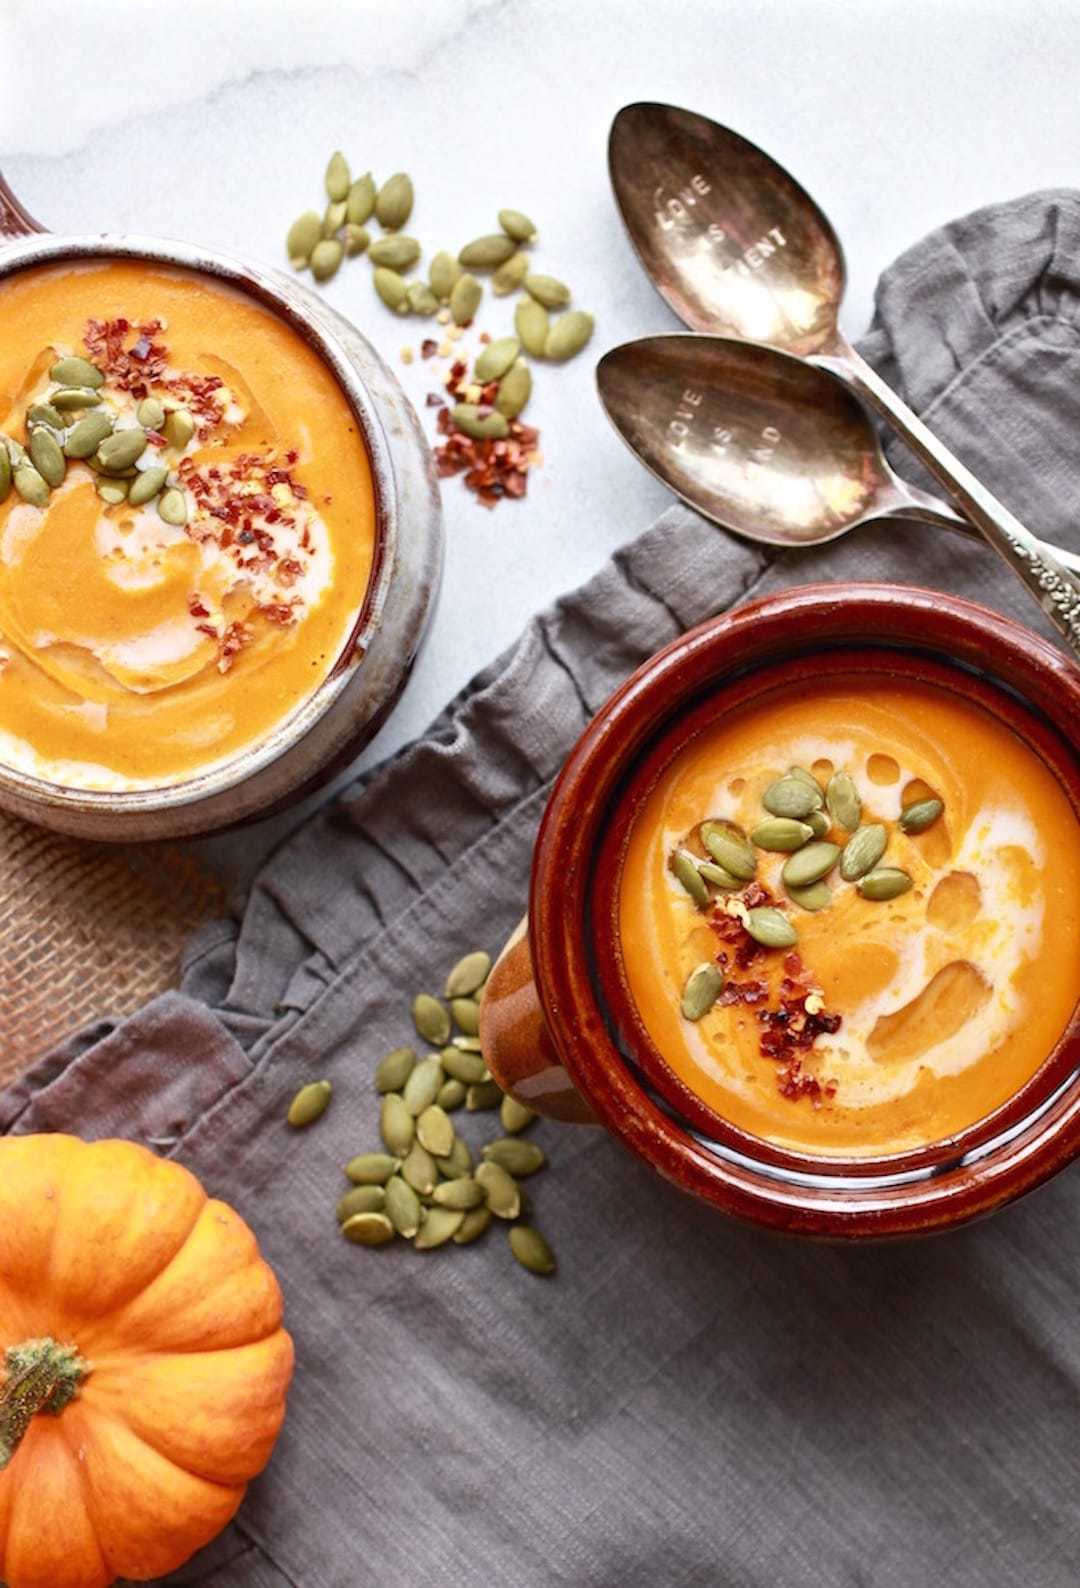 10 Terrific & Simple Healthy Fall Recipes - Thai Blender Pumpkin Soup